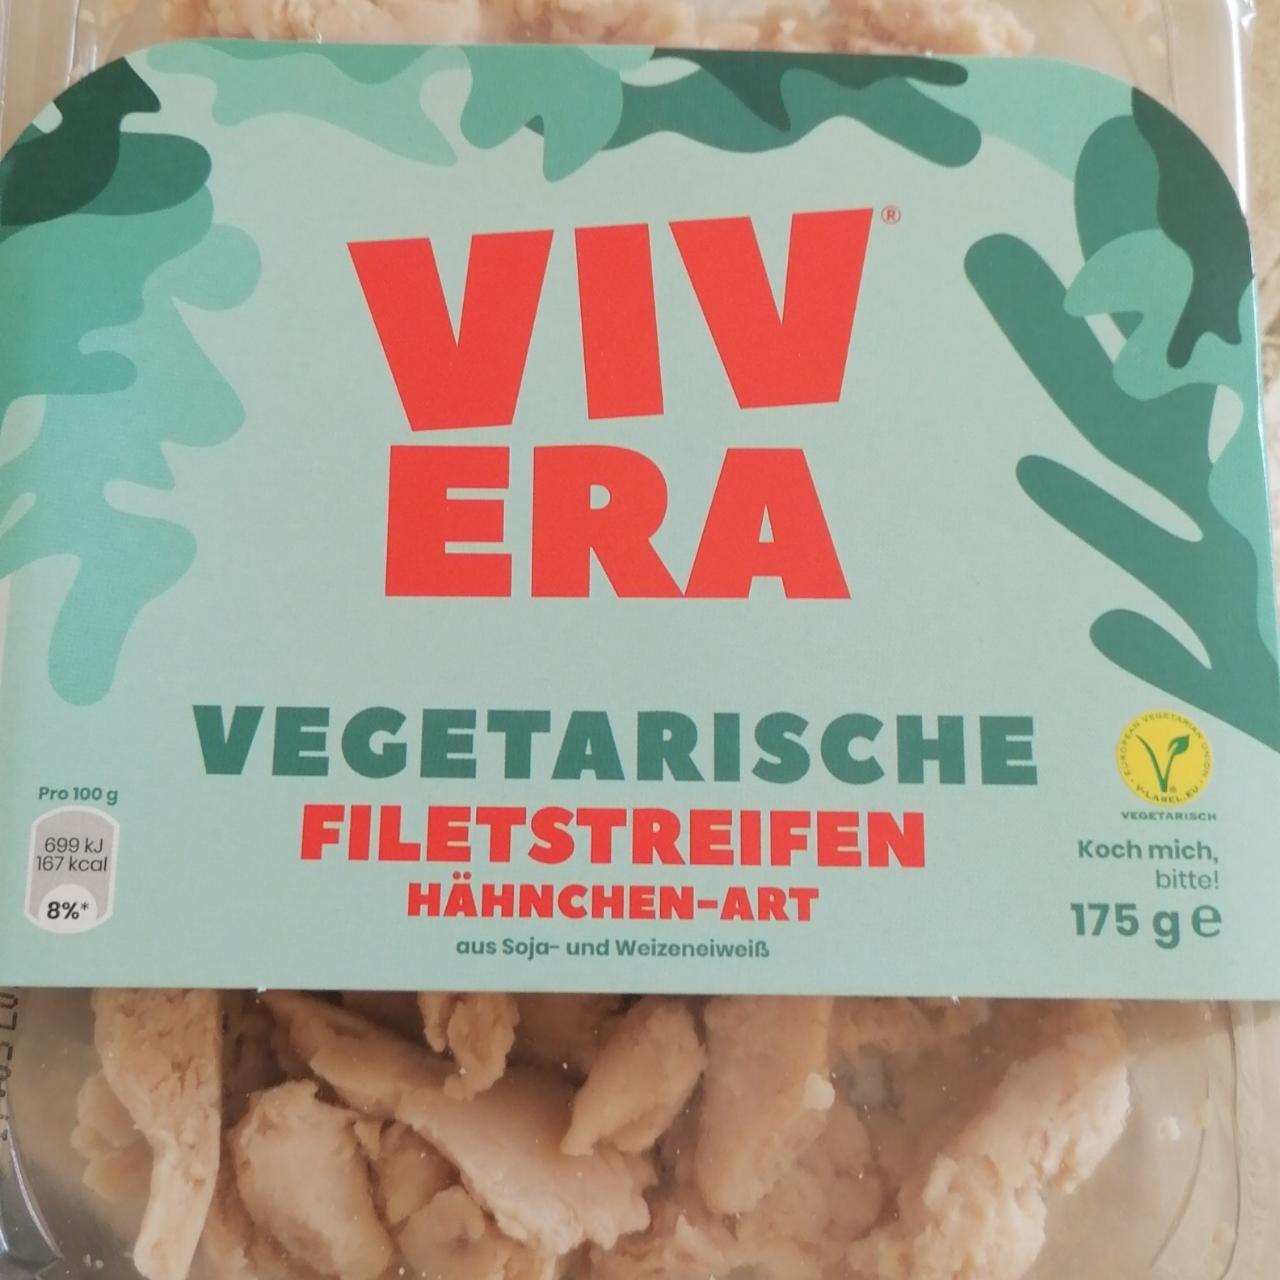 Képek - Vegetarische filetstreifen hähnchen-art Vivera